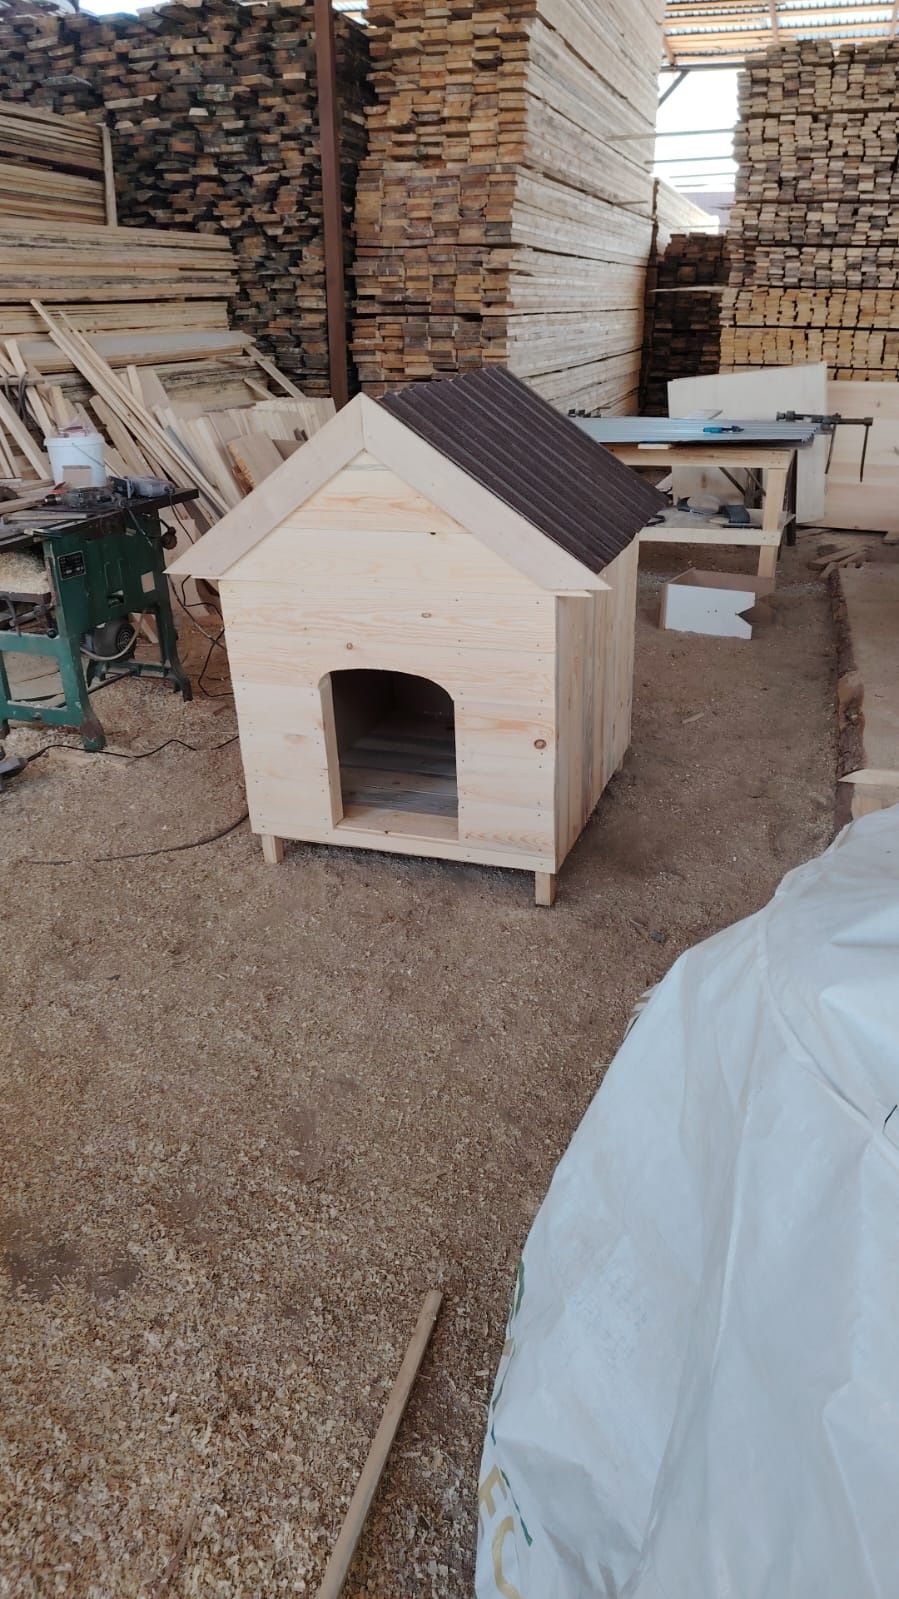 Будка и вольер собак утепленый домик для маленьких собак на зиму тепло